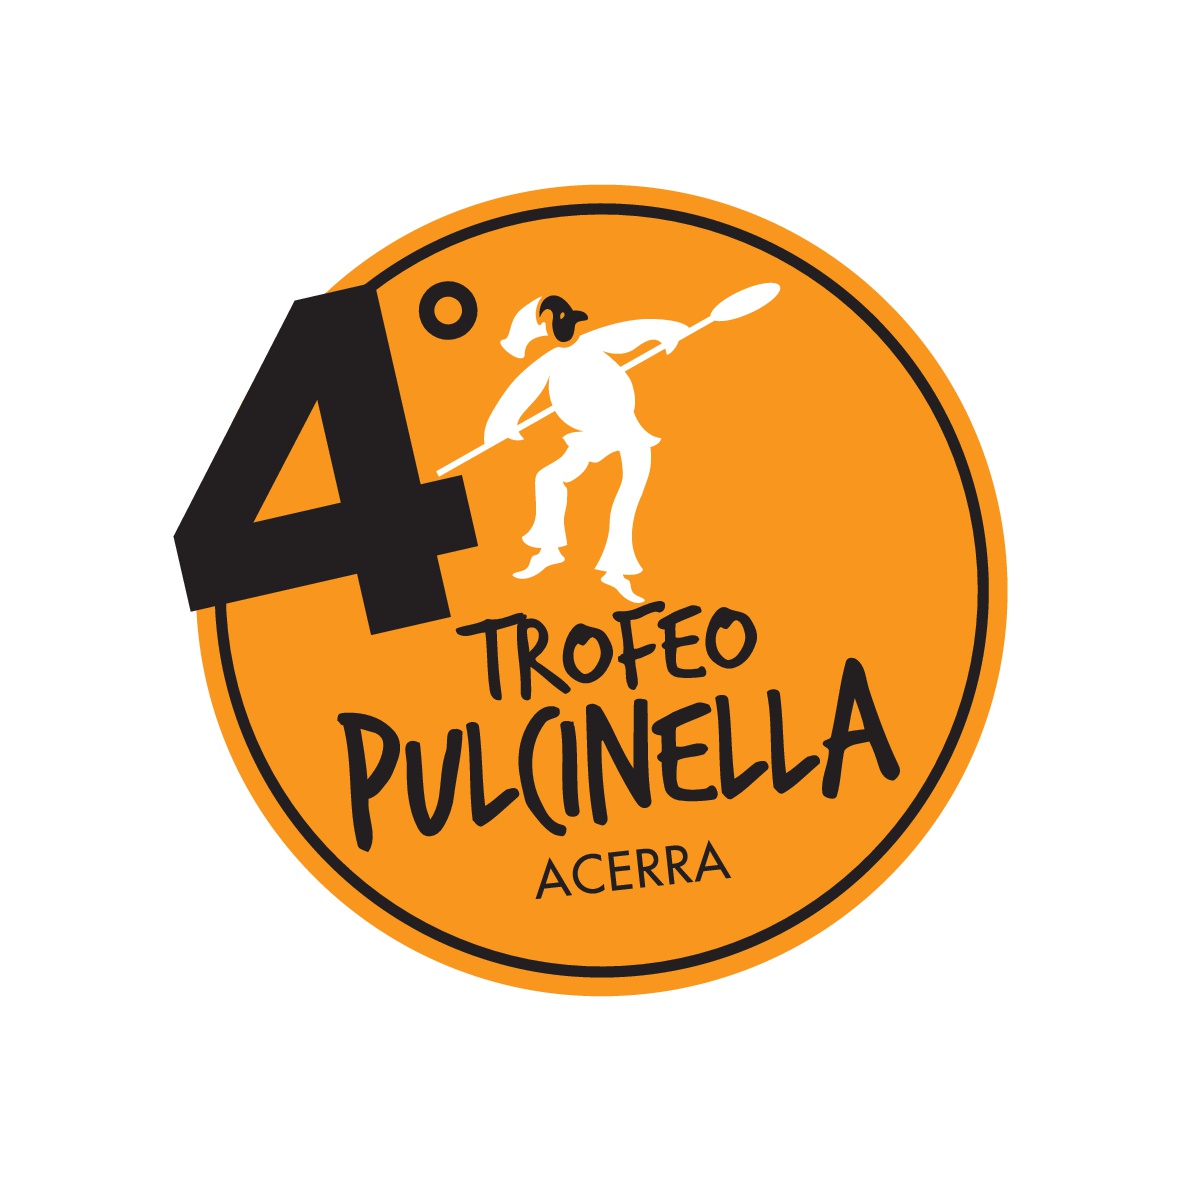 Foto 1 - Napoli, tutto pronto per la IV edizione del Trofeo Pulcinella. Cento pizzaioli, italiani e stranieri, si sfideranno alla Mostra d’Oltremare il 24 e 25 settembre.